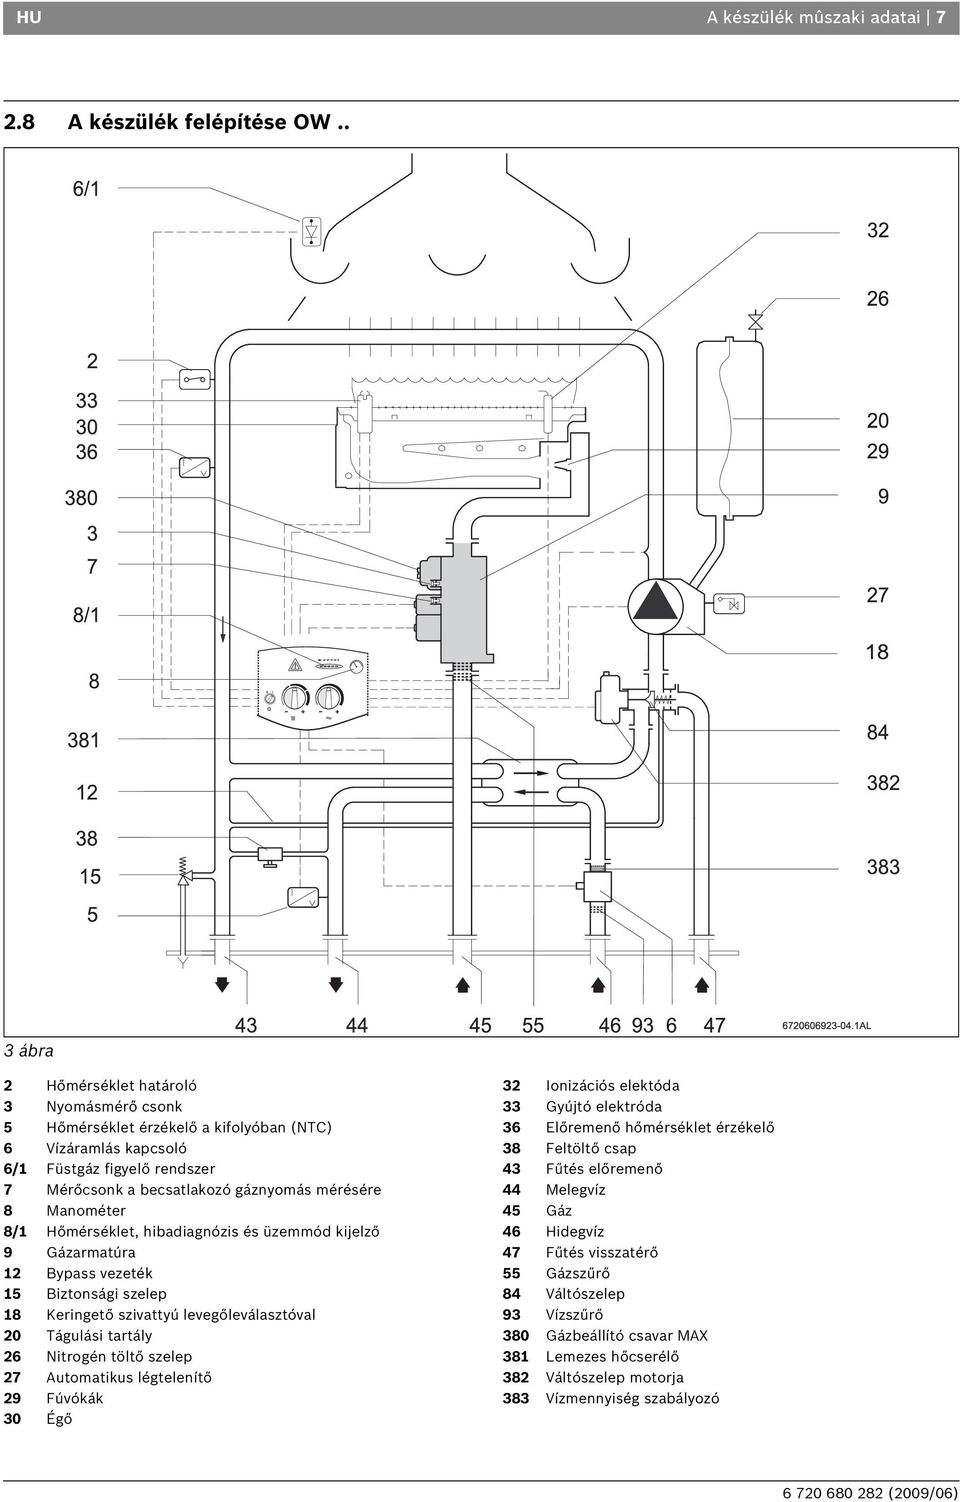 Gázkazán GAZ 3000 W OS/W 23-1 LH KE 23/31. Telepítési és használati  utasítás (2009/06) HU - PDF Ingyenes letöltés